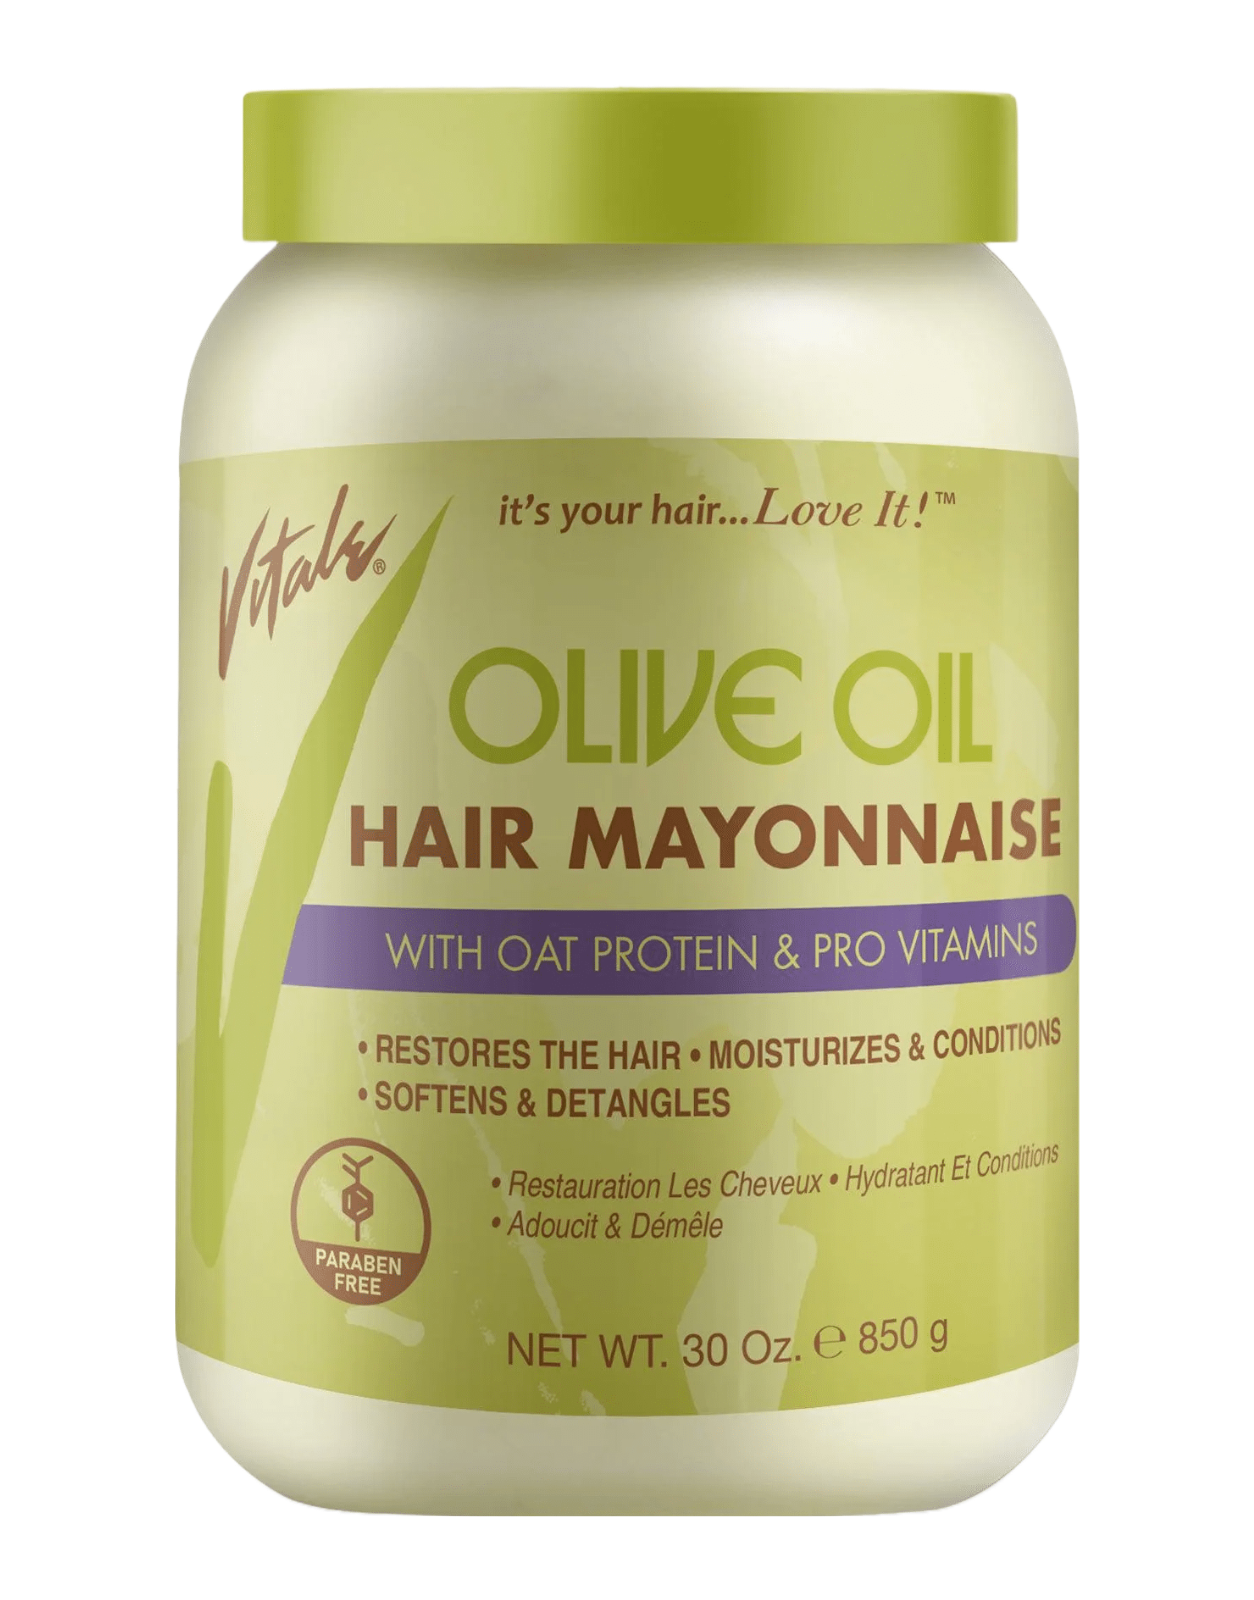 Vitale - Olive Oil Hair Mayonnaise